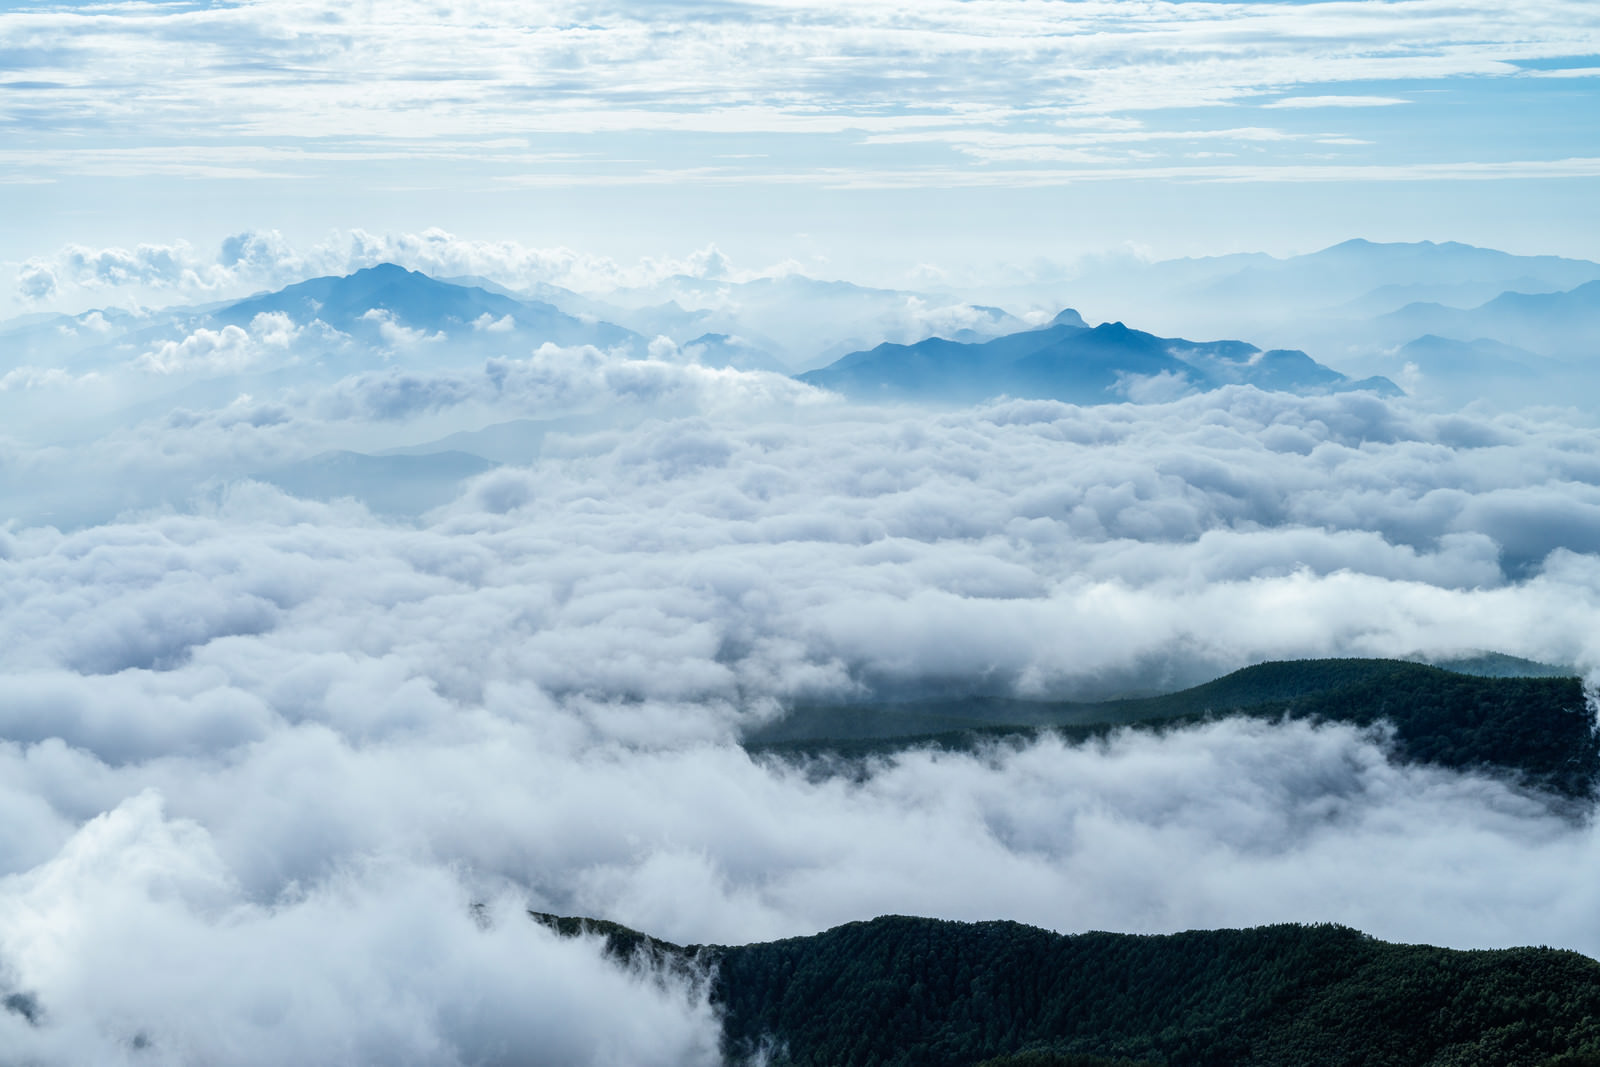 雲海の中に浮かぶ山々 にゅう の写真 画像 フリー素材 ぱくたそ